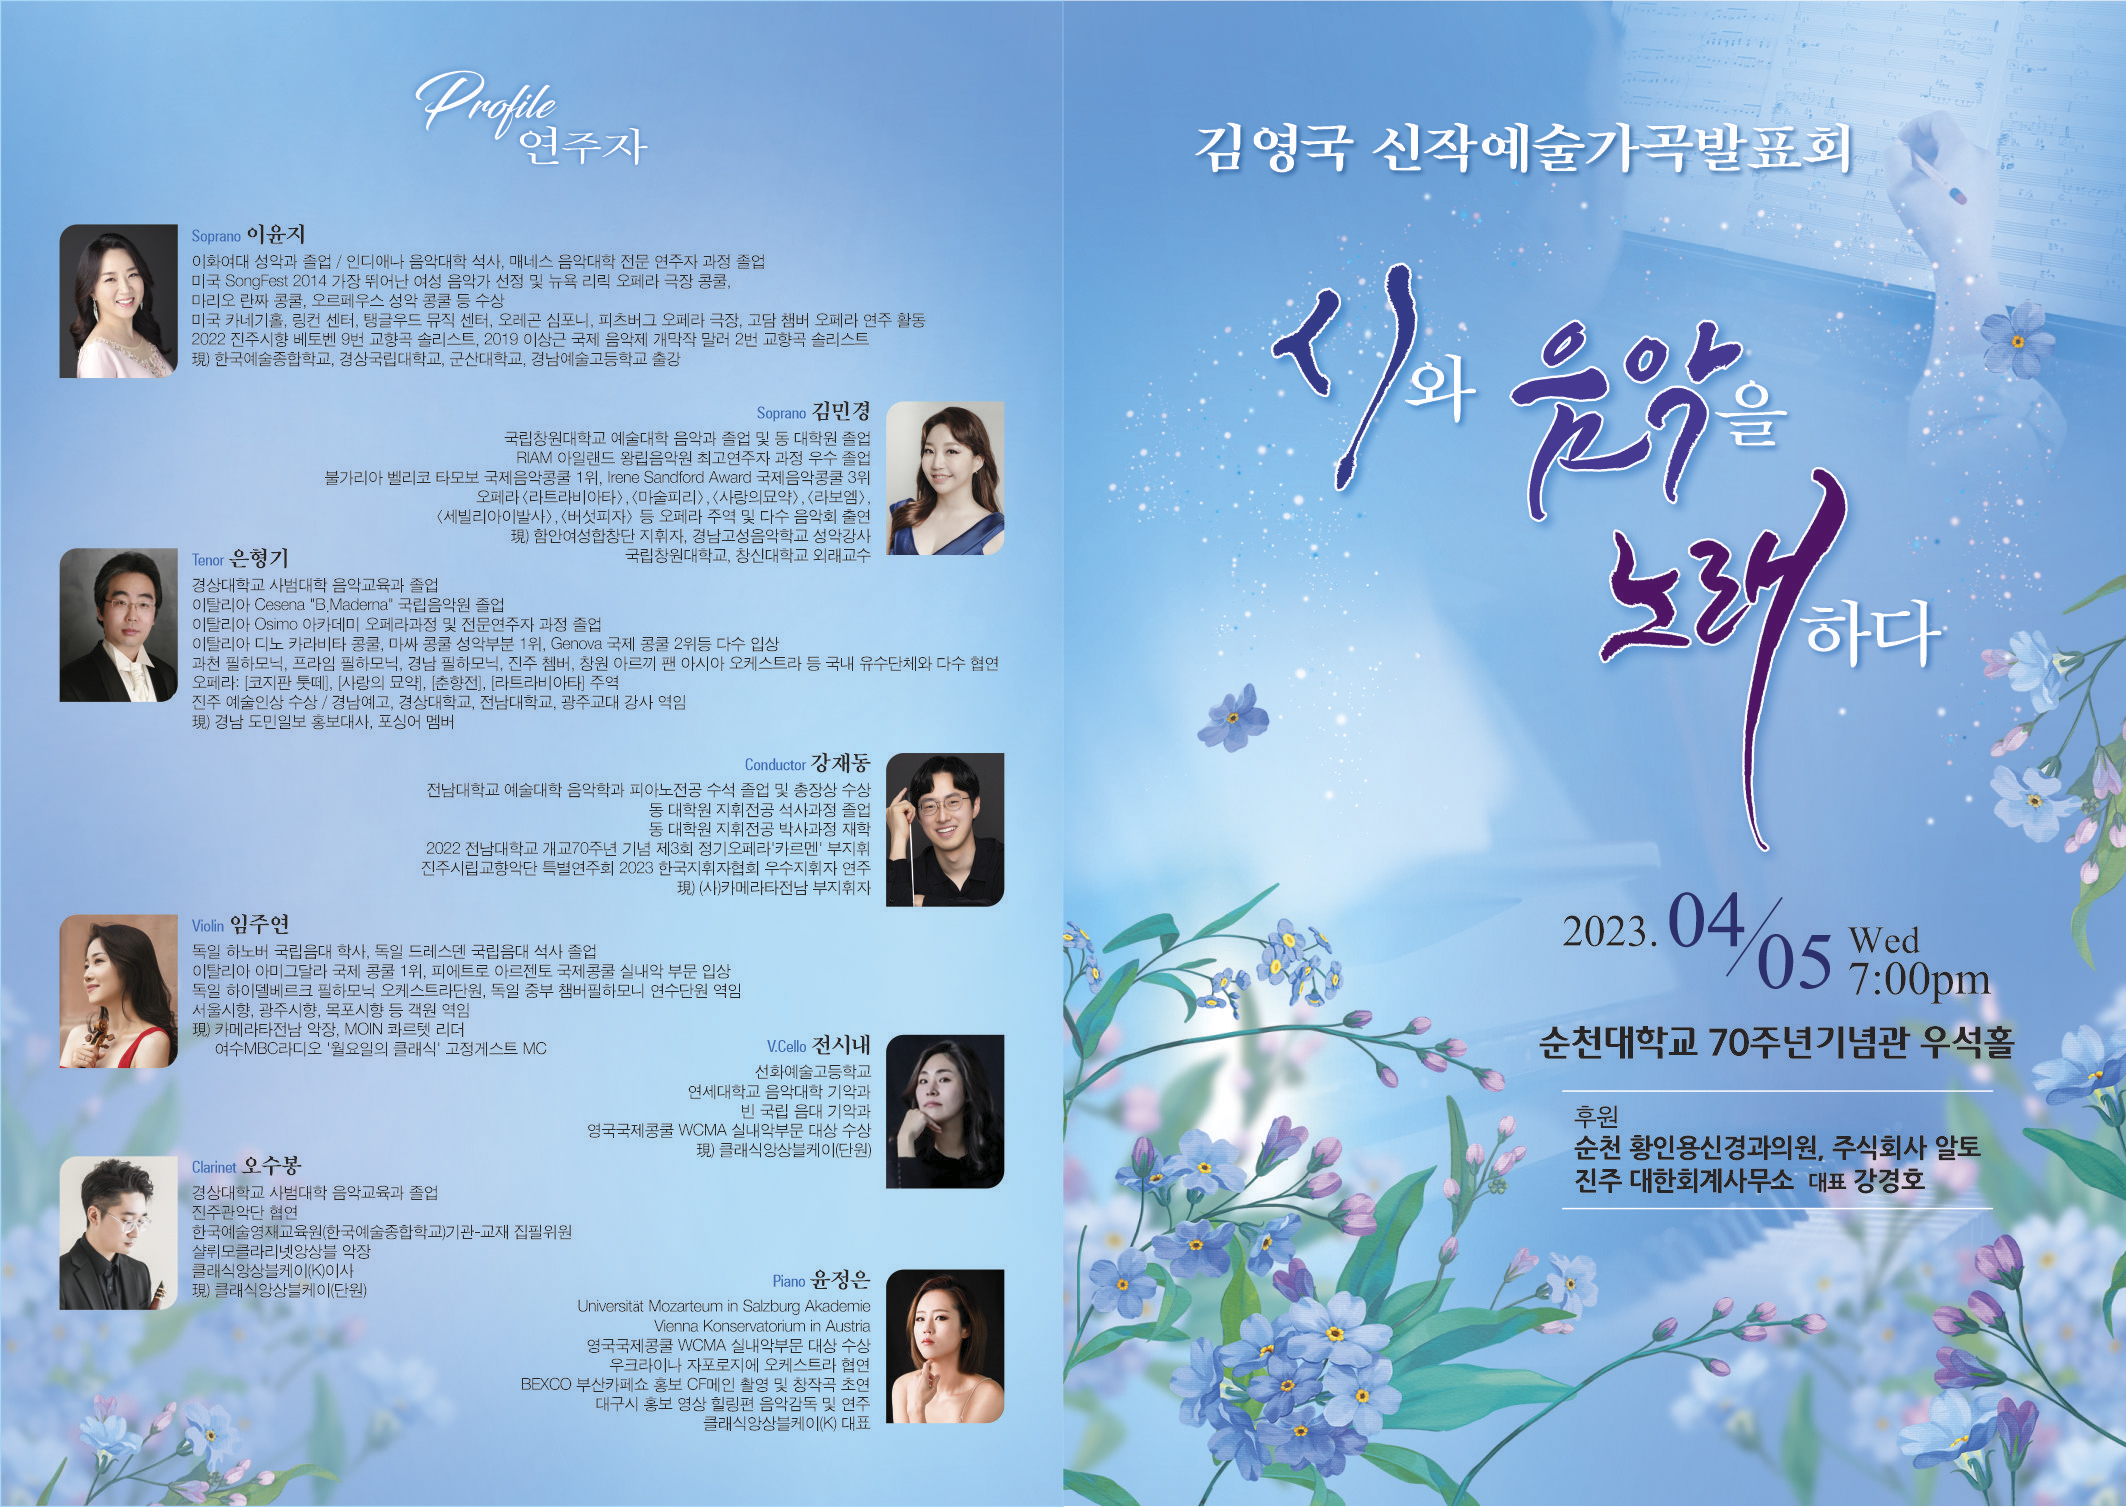 김영국 신작예술가곡발표회 [시와 음악을 노래하다] 연주 개최 안내 상세정보 페이지로 이동하기